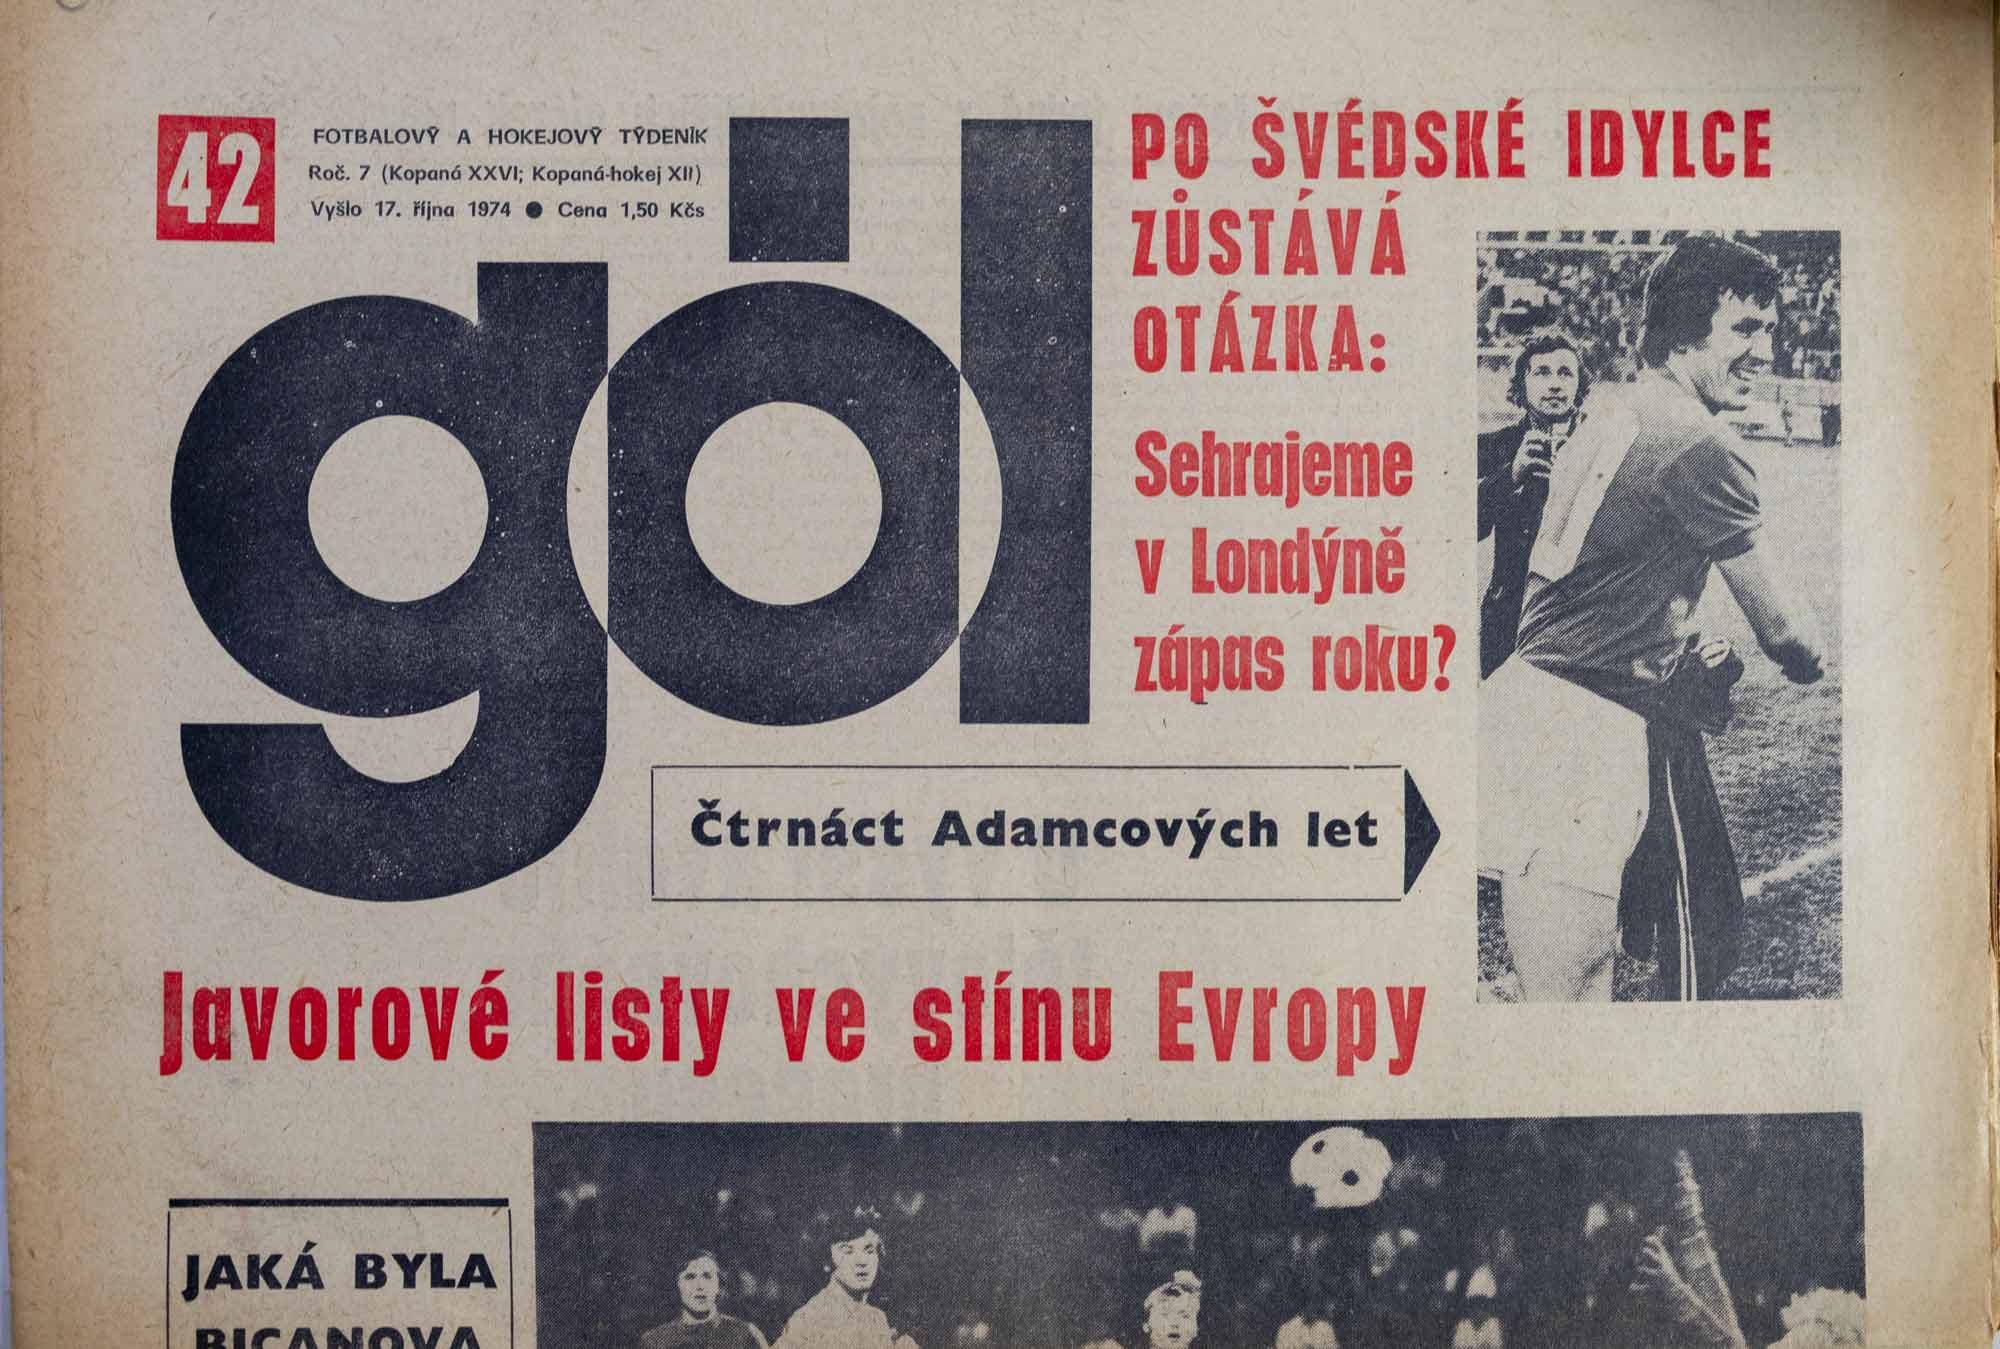 GÓL. Fotbalový a hokejový týdeník, 7/26/12/1974 č. 42